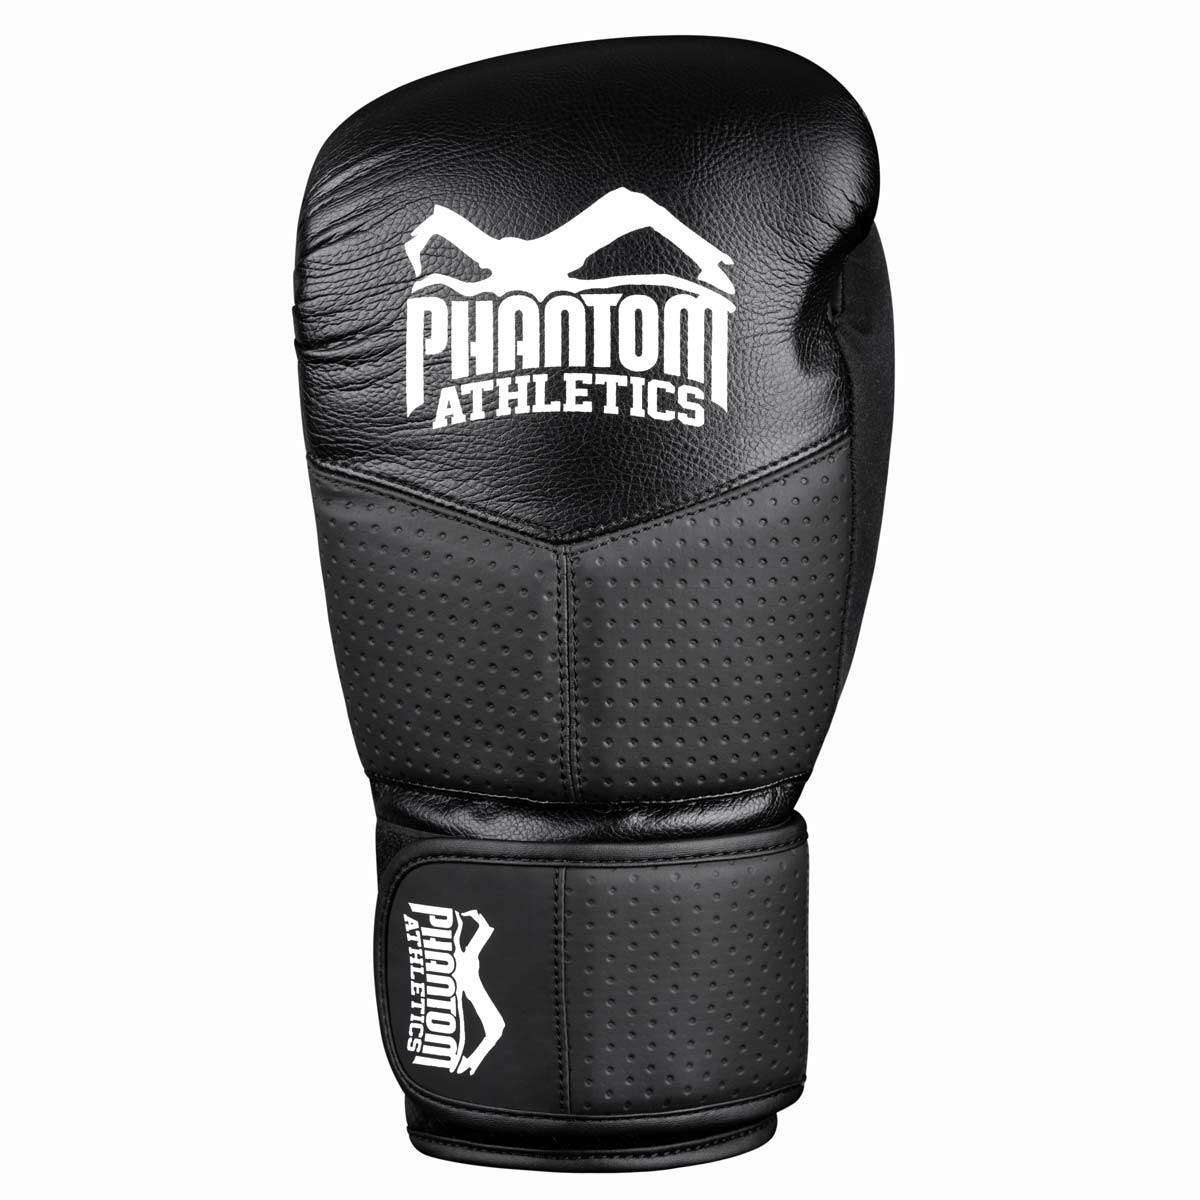 Die Phantom RIOT PRO Boxhandschuhe. Ideal für dein Kampfsport Training und Wettkämpfe. Perfekte Passform und überragende Qualität für Training und Sparring. Mit extra Support im Handgelenksbereich.